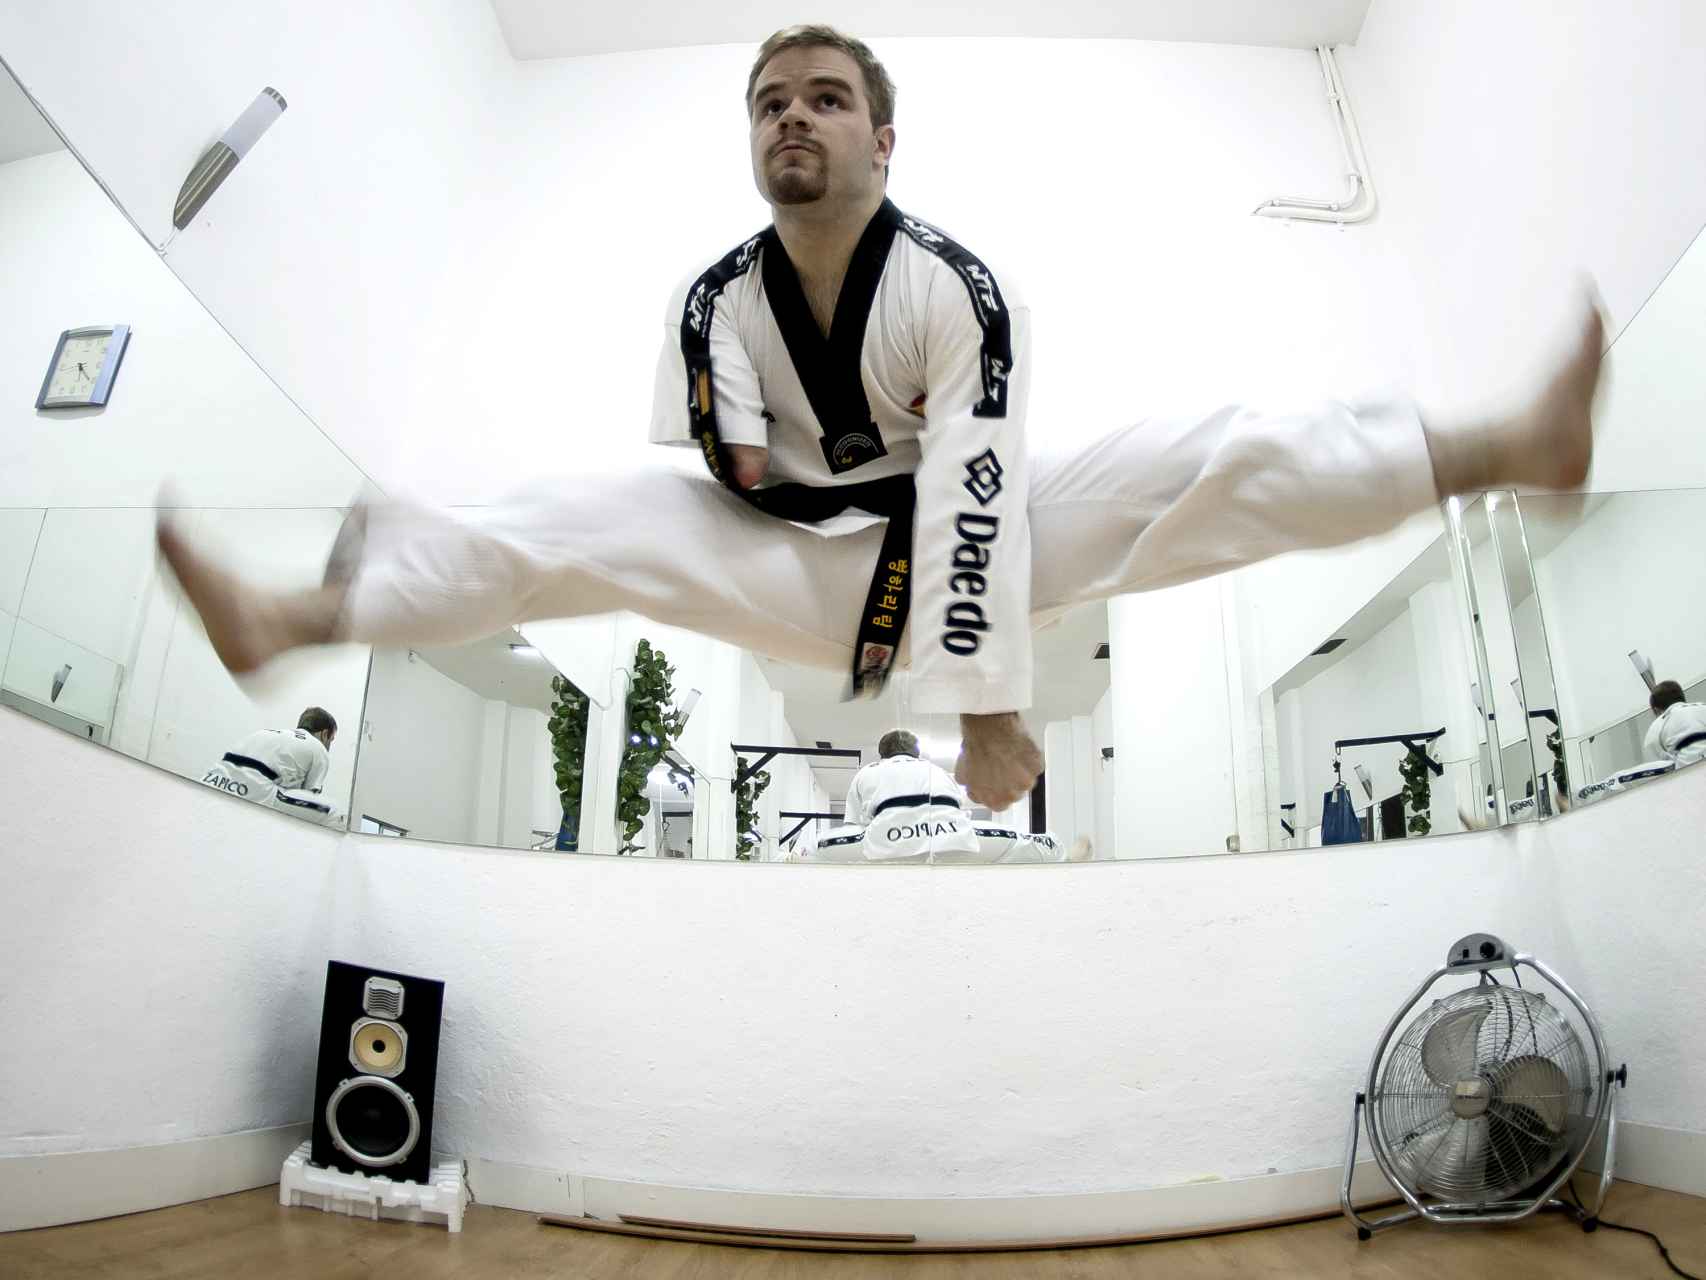 La discapacidad no ha impedido a Javier alcanzar el segundo dan del cinturón negro de taekwondo.